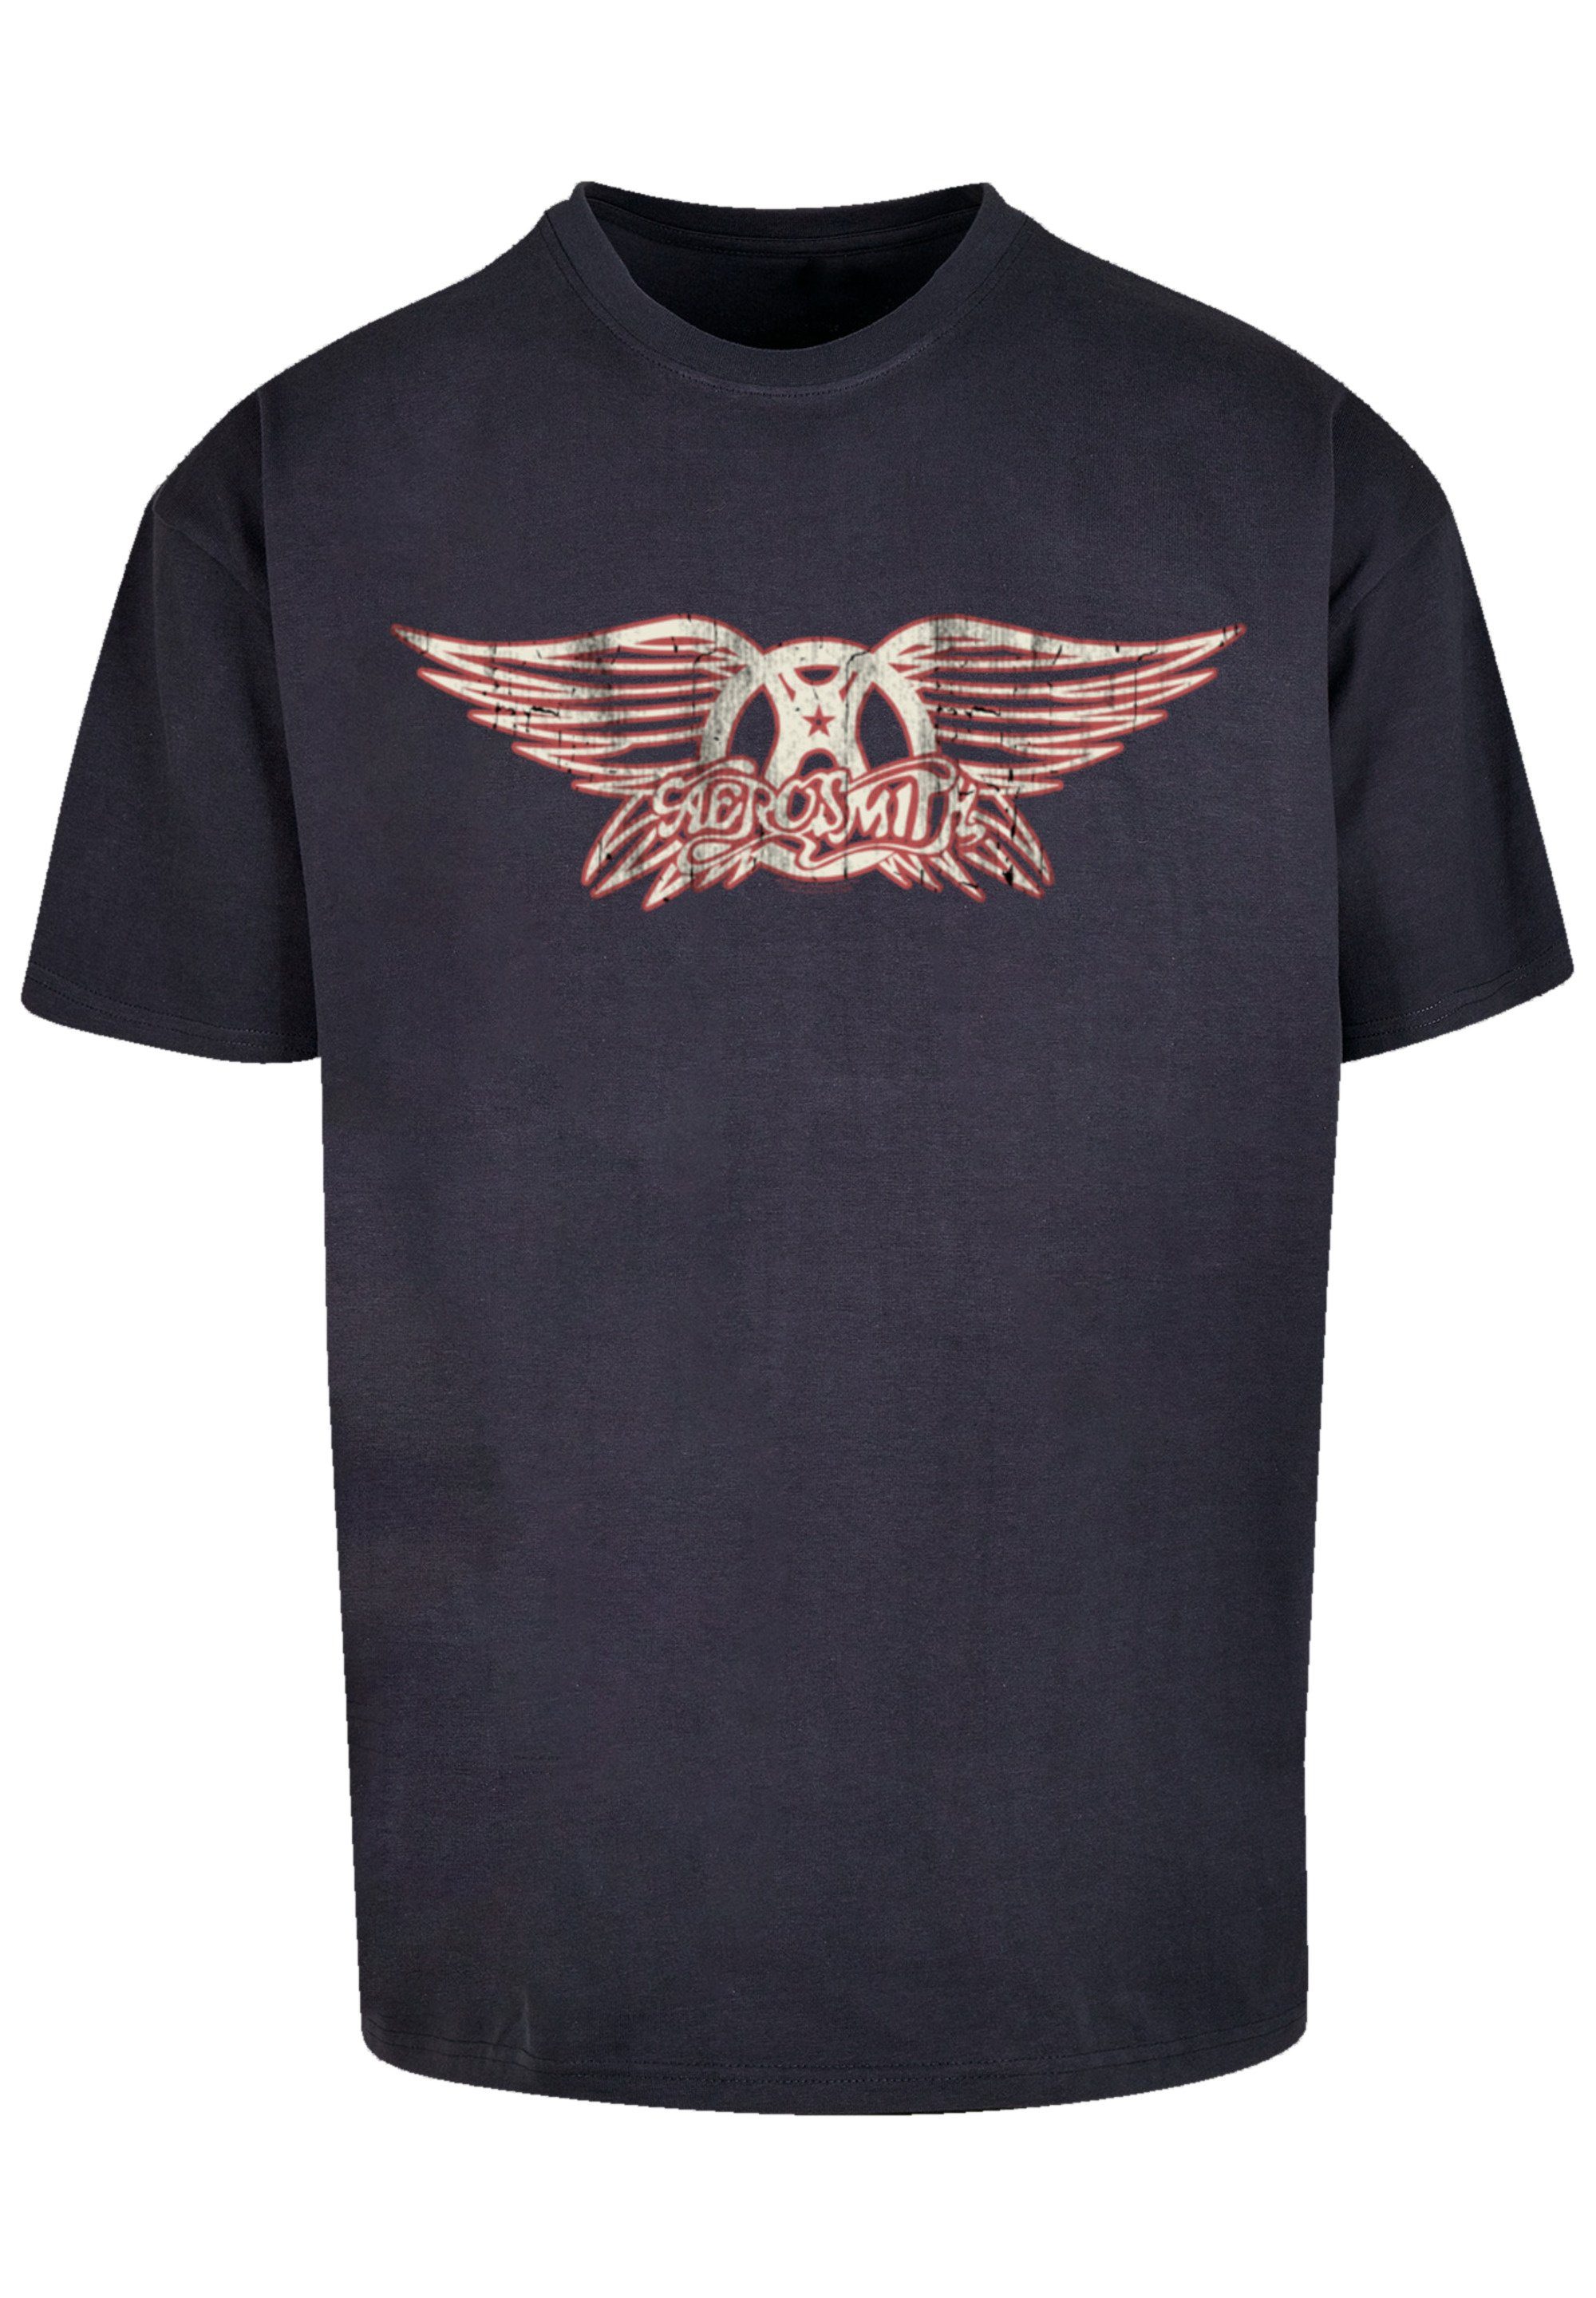 Schultern Aerosmith F4NT4STIC Premium Weite T-Shirt Band, Band und überschnittene Logo Passform Rock-Musik, Rock Qualität,